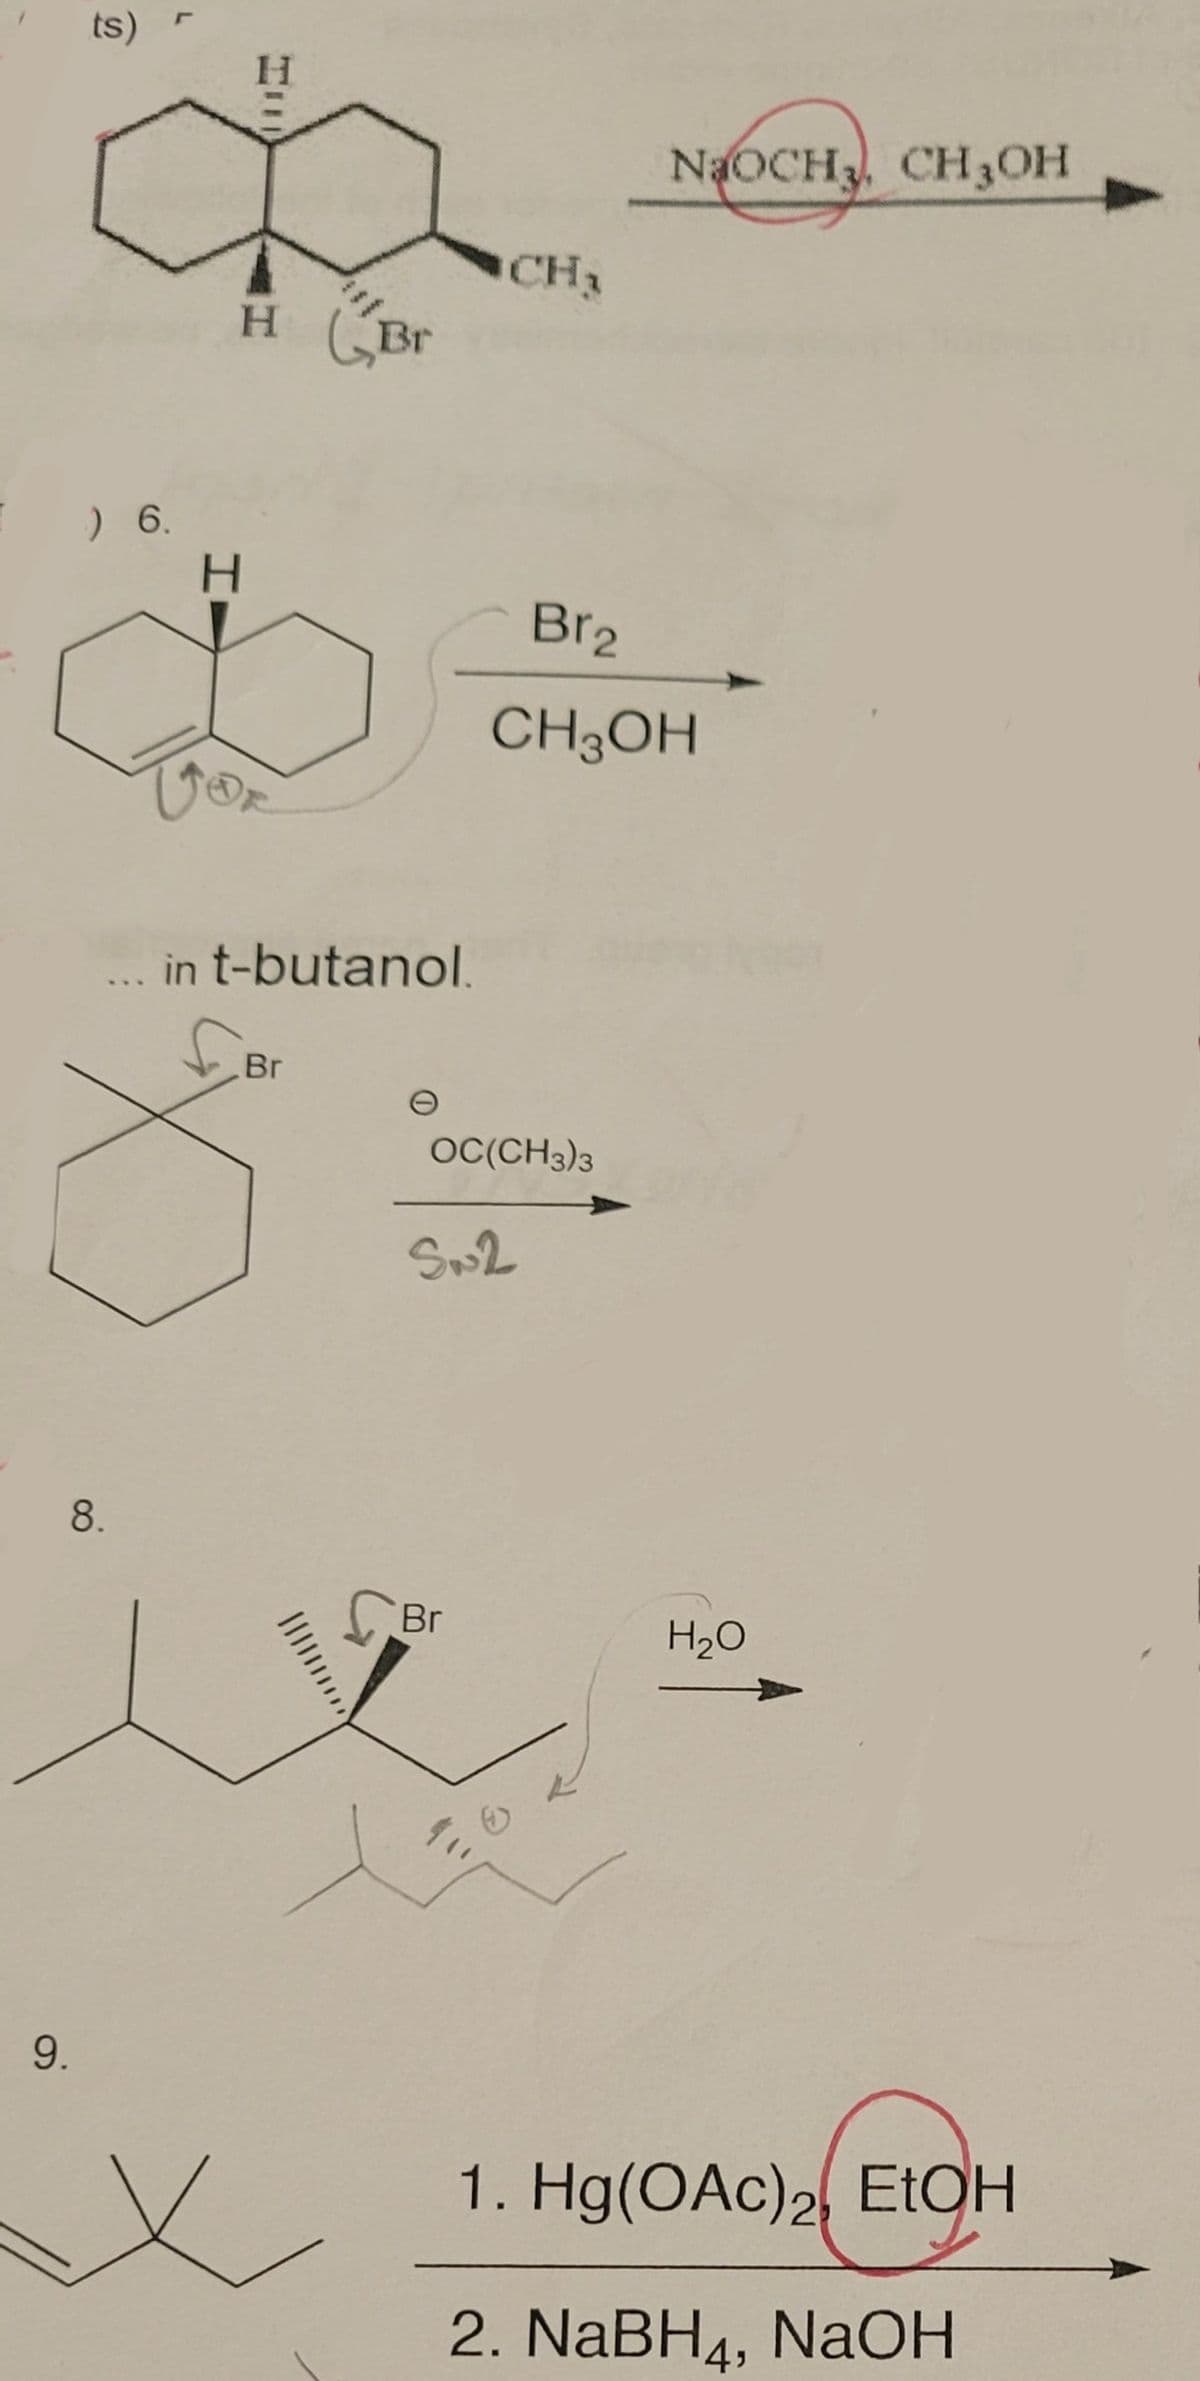 ts)
H.
NaOCH3, CH3OH
CH2
H (Br
) 6.
H.
Br2
CH3OH
in t-butanol.
Br
OC(CH3)3
Sw2
8.
Br
H20
9.
1. Hg(OAc)2 EŁOH
2. NaBH4, NaOH
